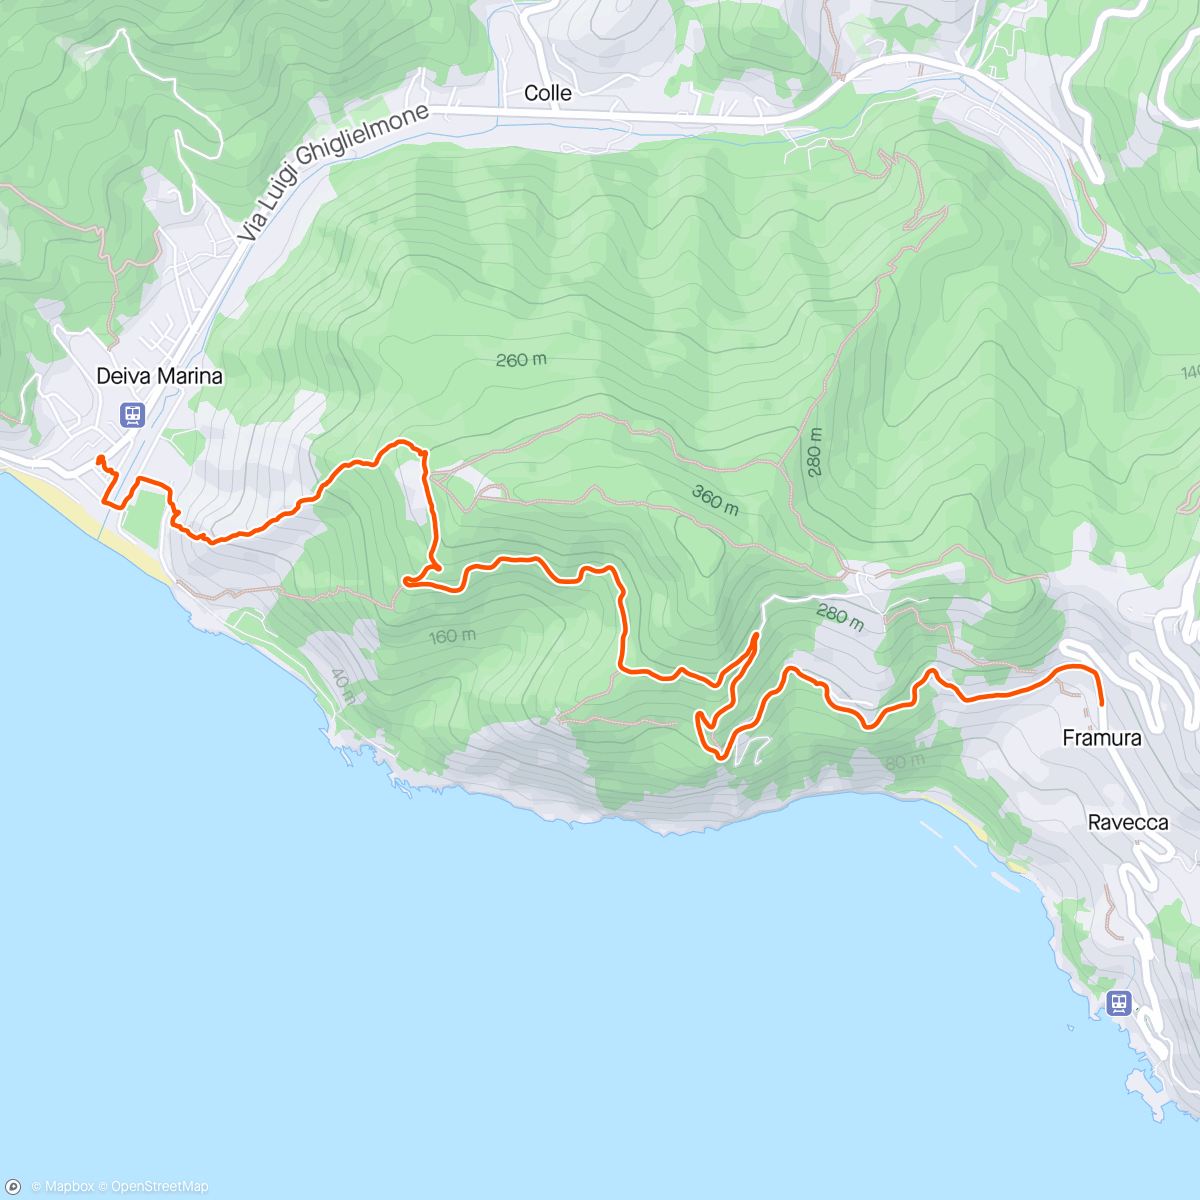 Mapa da atividade, Deiva Marina to Framura